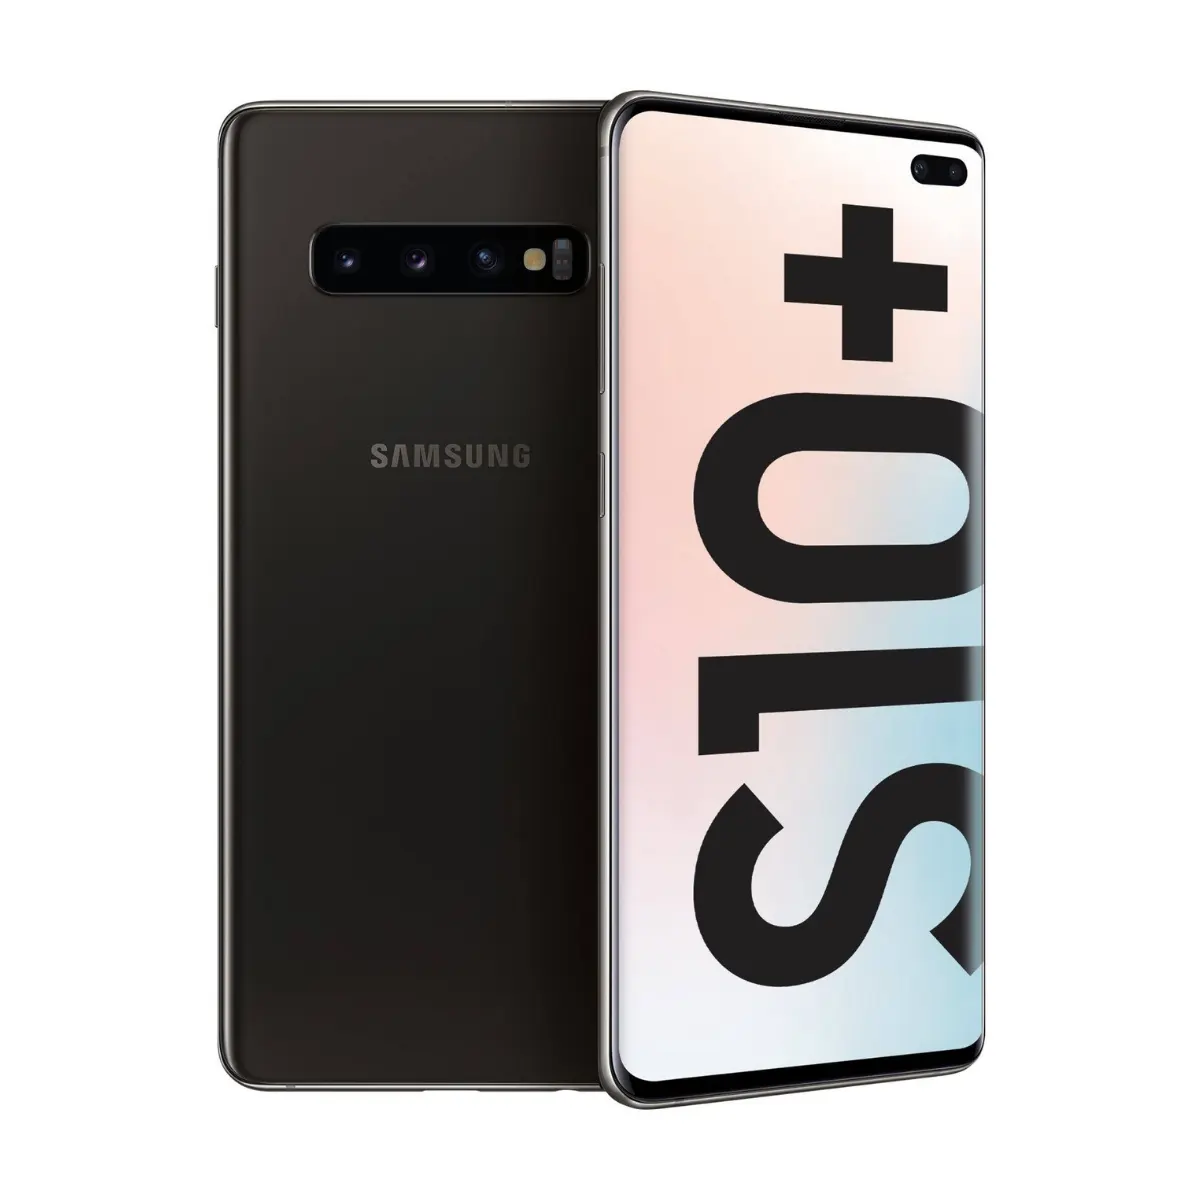 Ban đầu sử dụng điện thoại di động điện thoại bán buôn bán mở khóa 4G điện thoại thông minh cho Samsung Galaxy S10 8 + 128GB phiên bản toàn cầu